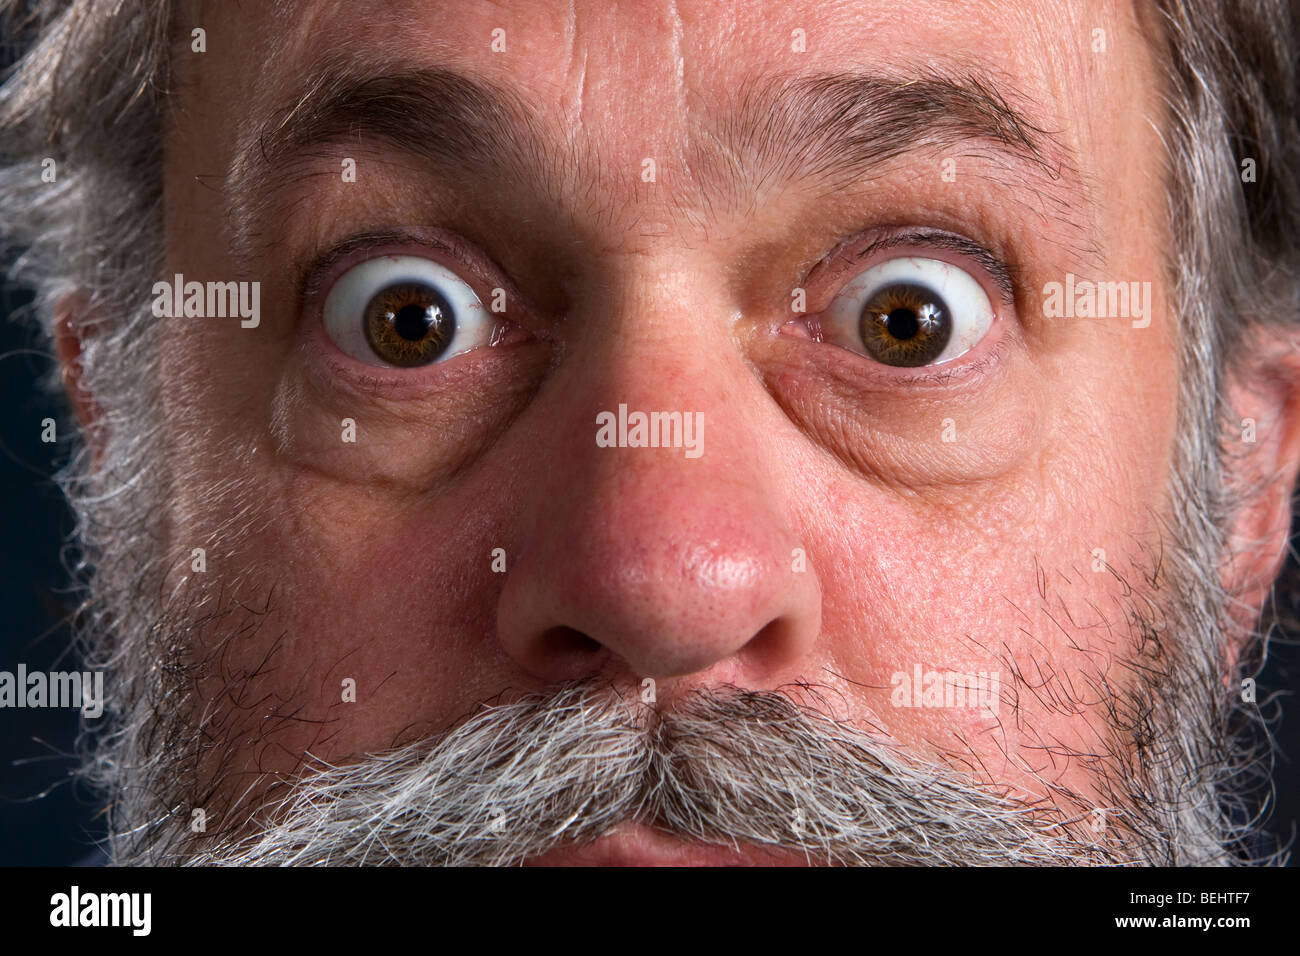 Big Eyes pop Stock Photo - Alamy